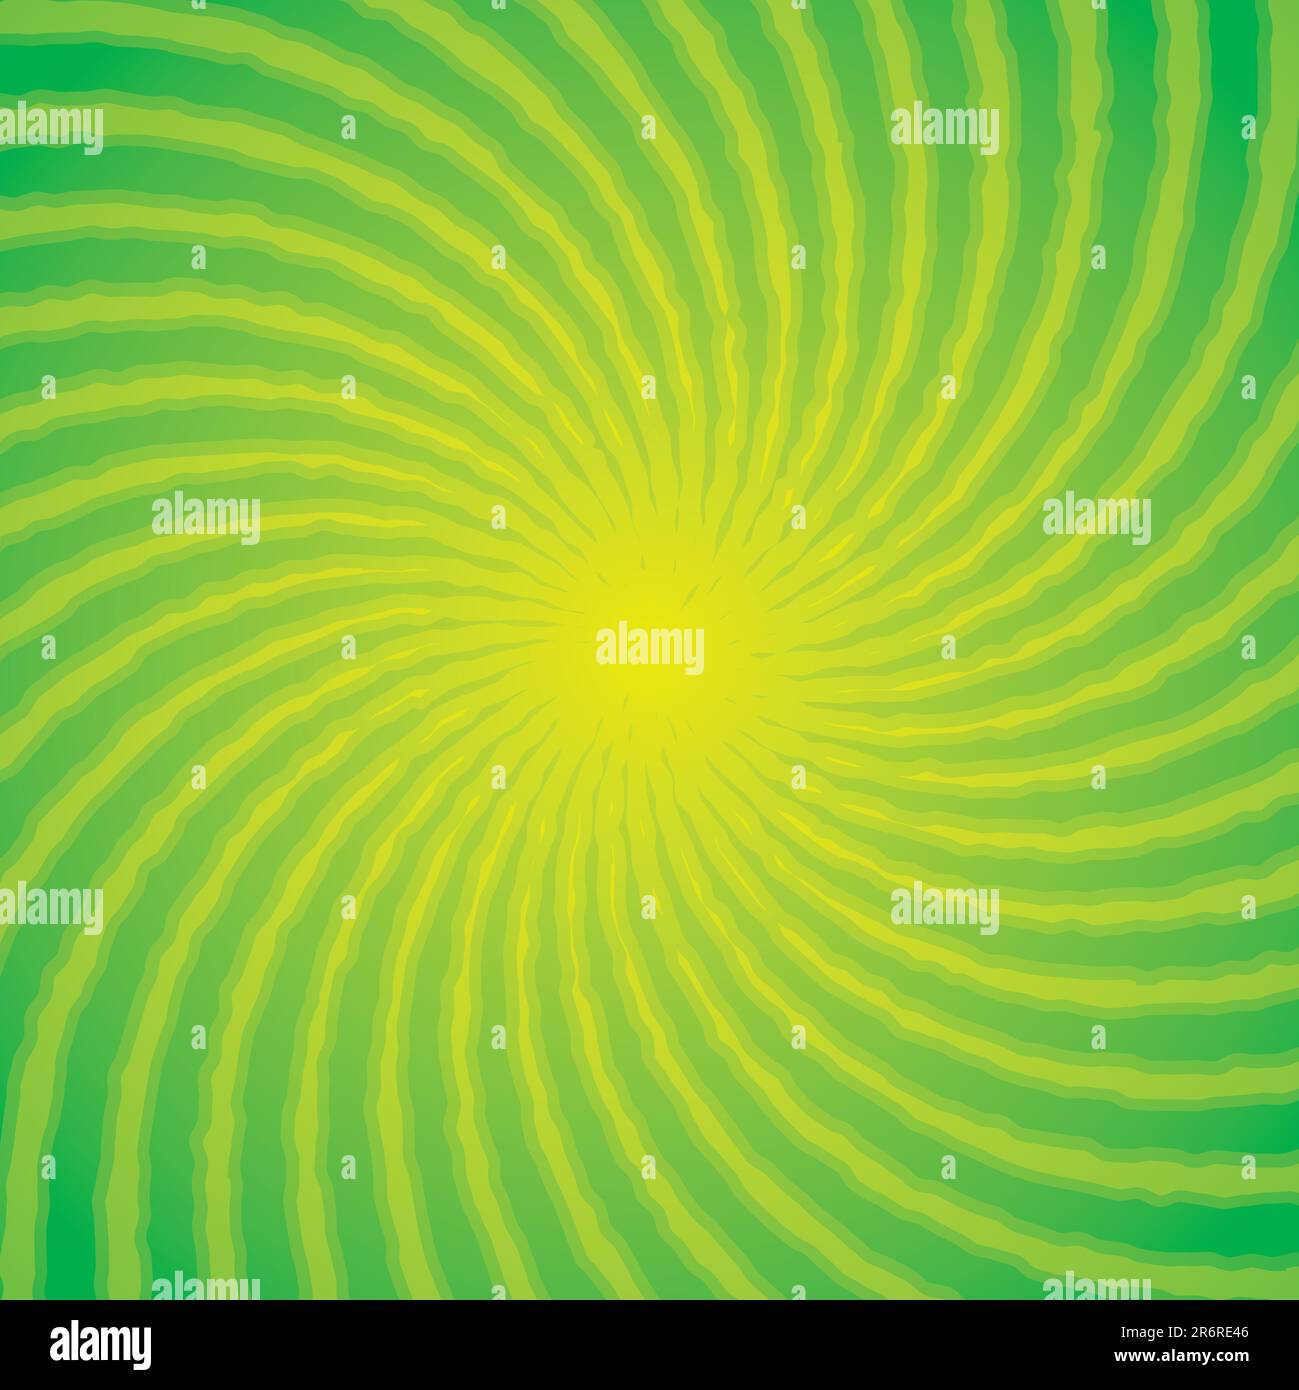 Green swirl vector background. Stock Vector